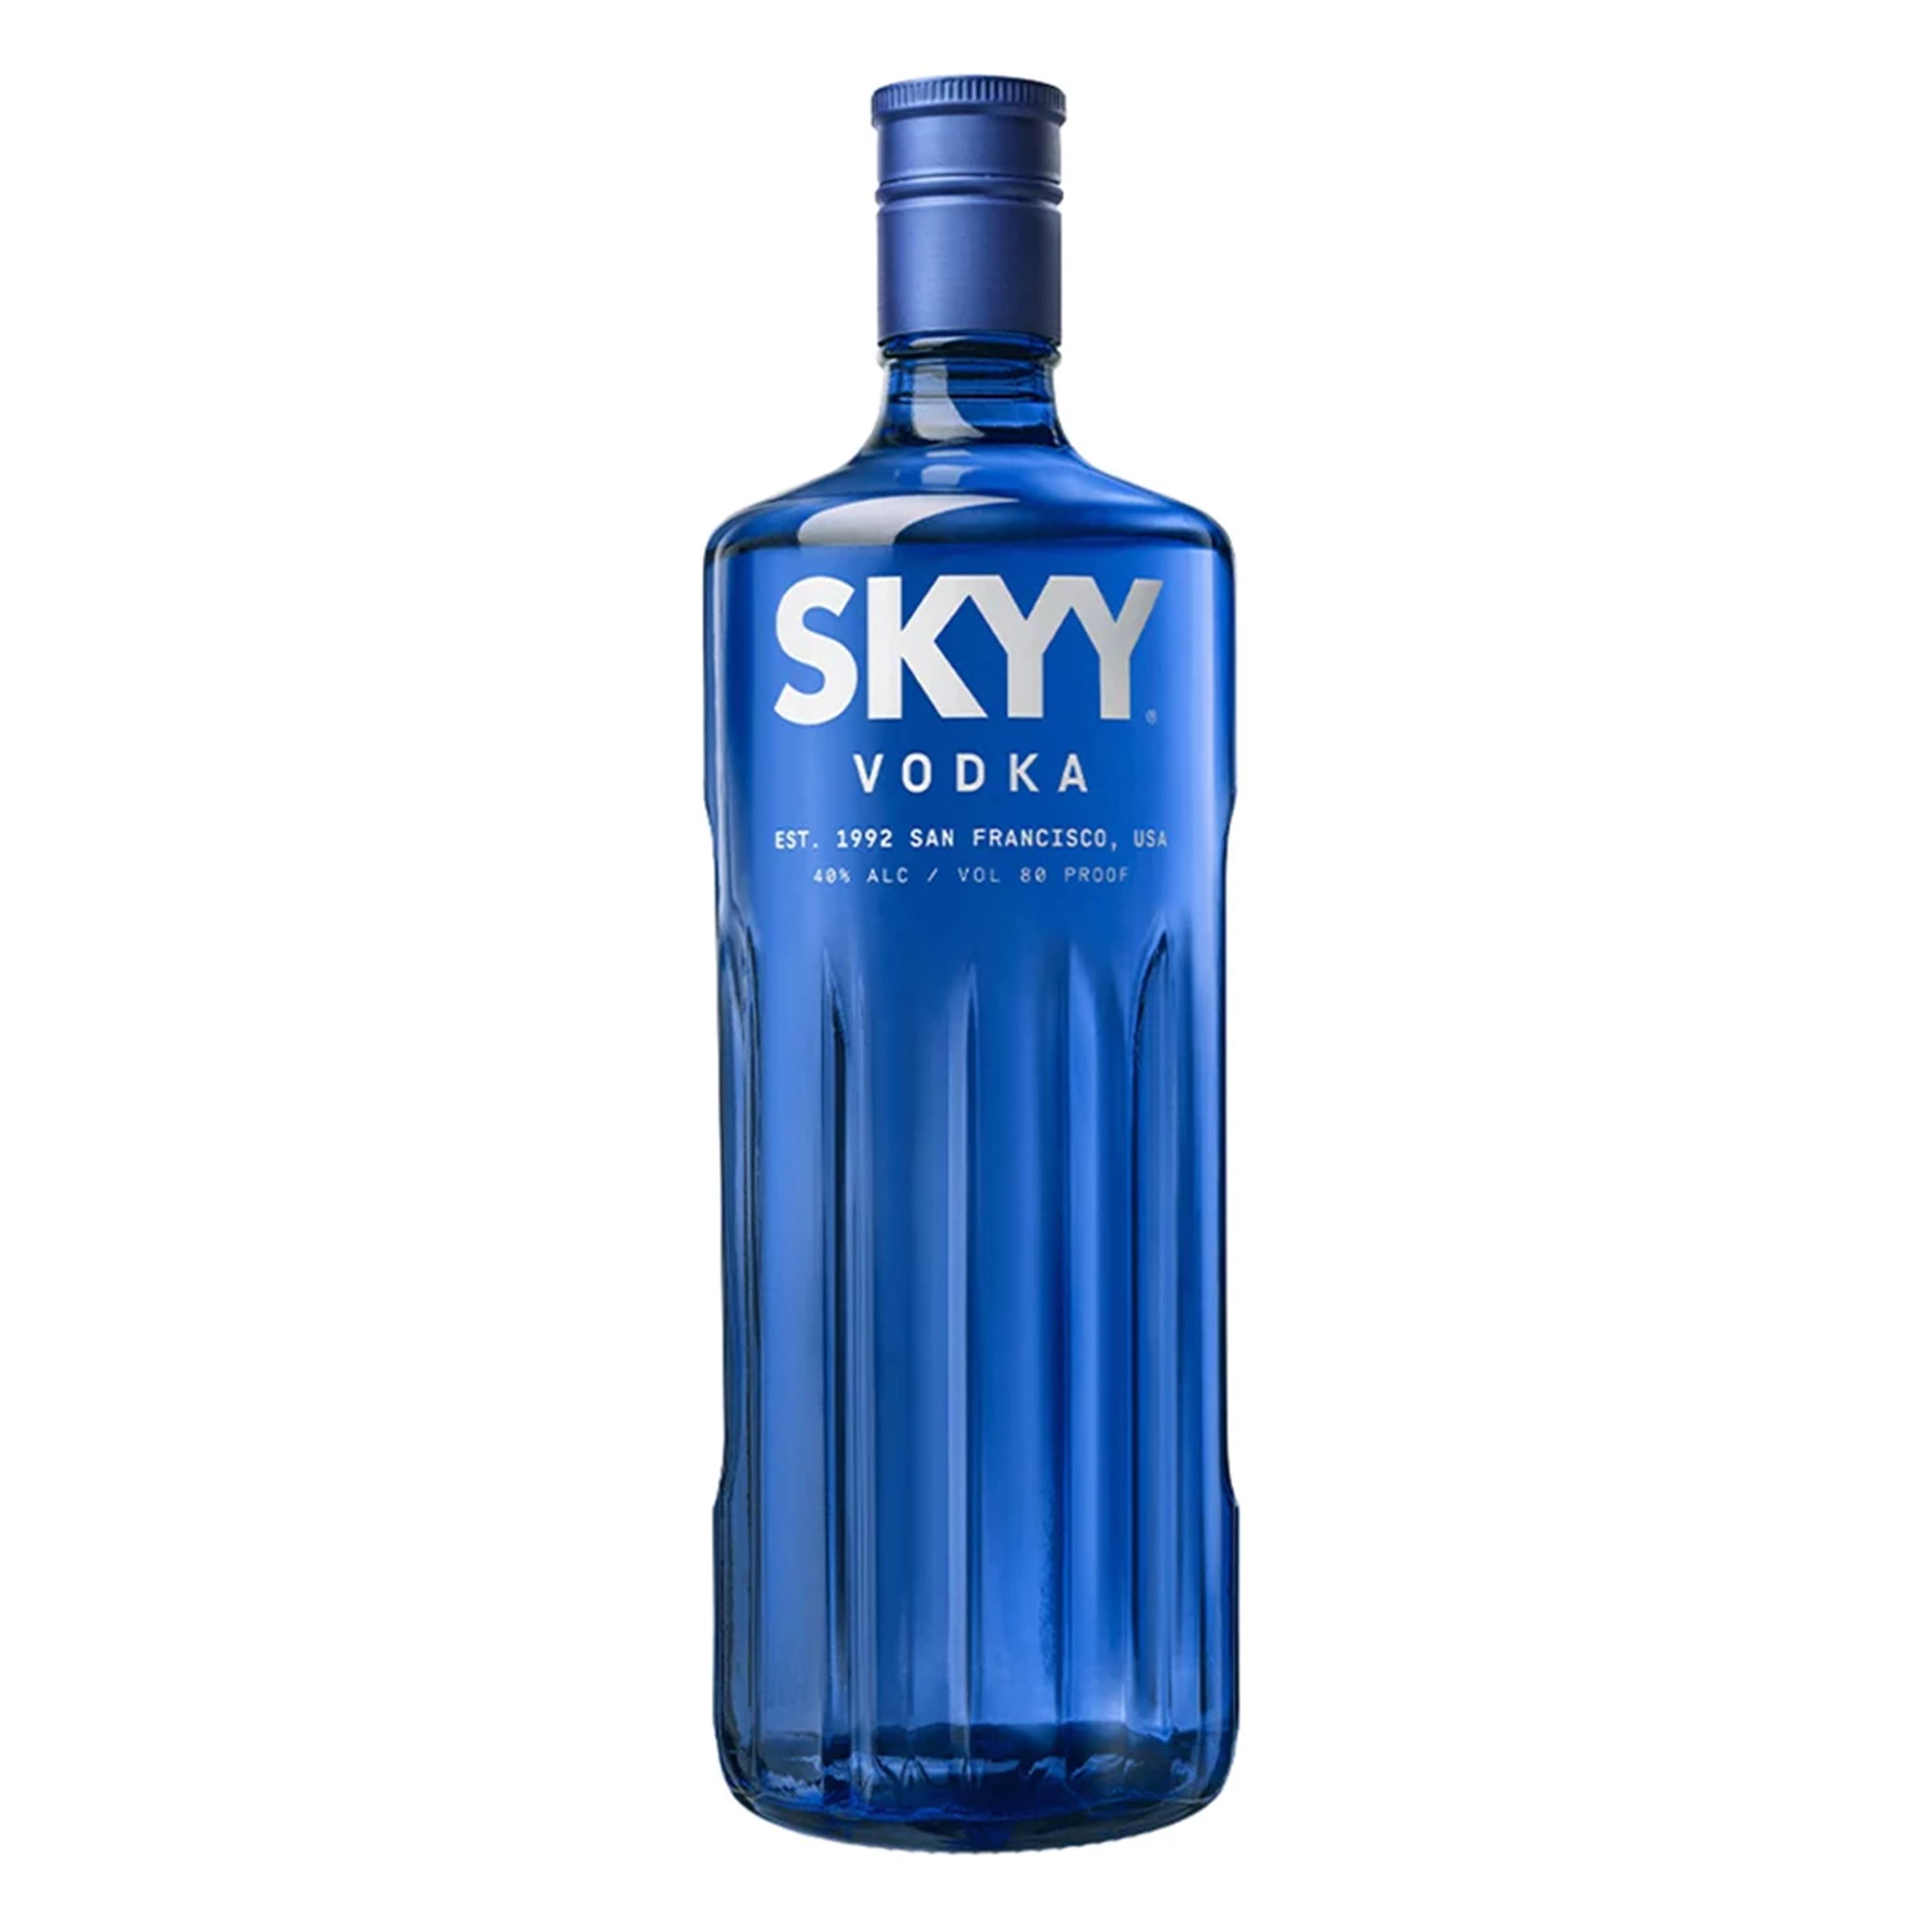 Skyy Vodka 1.75lt Bottle